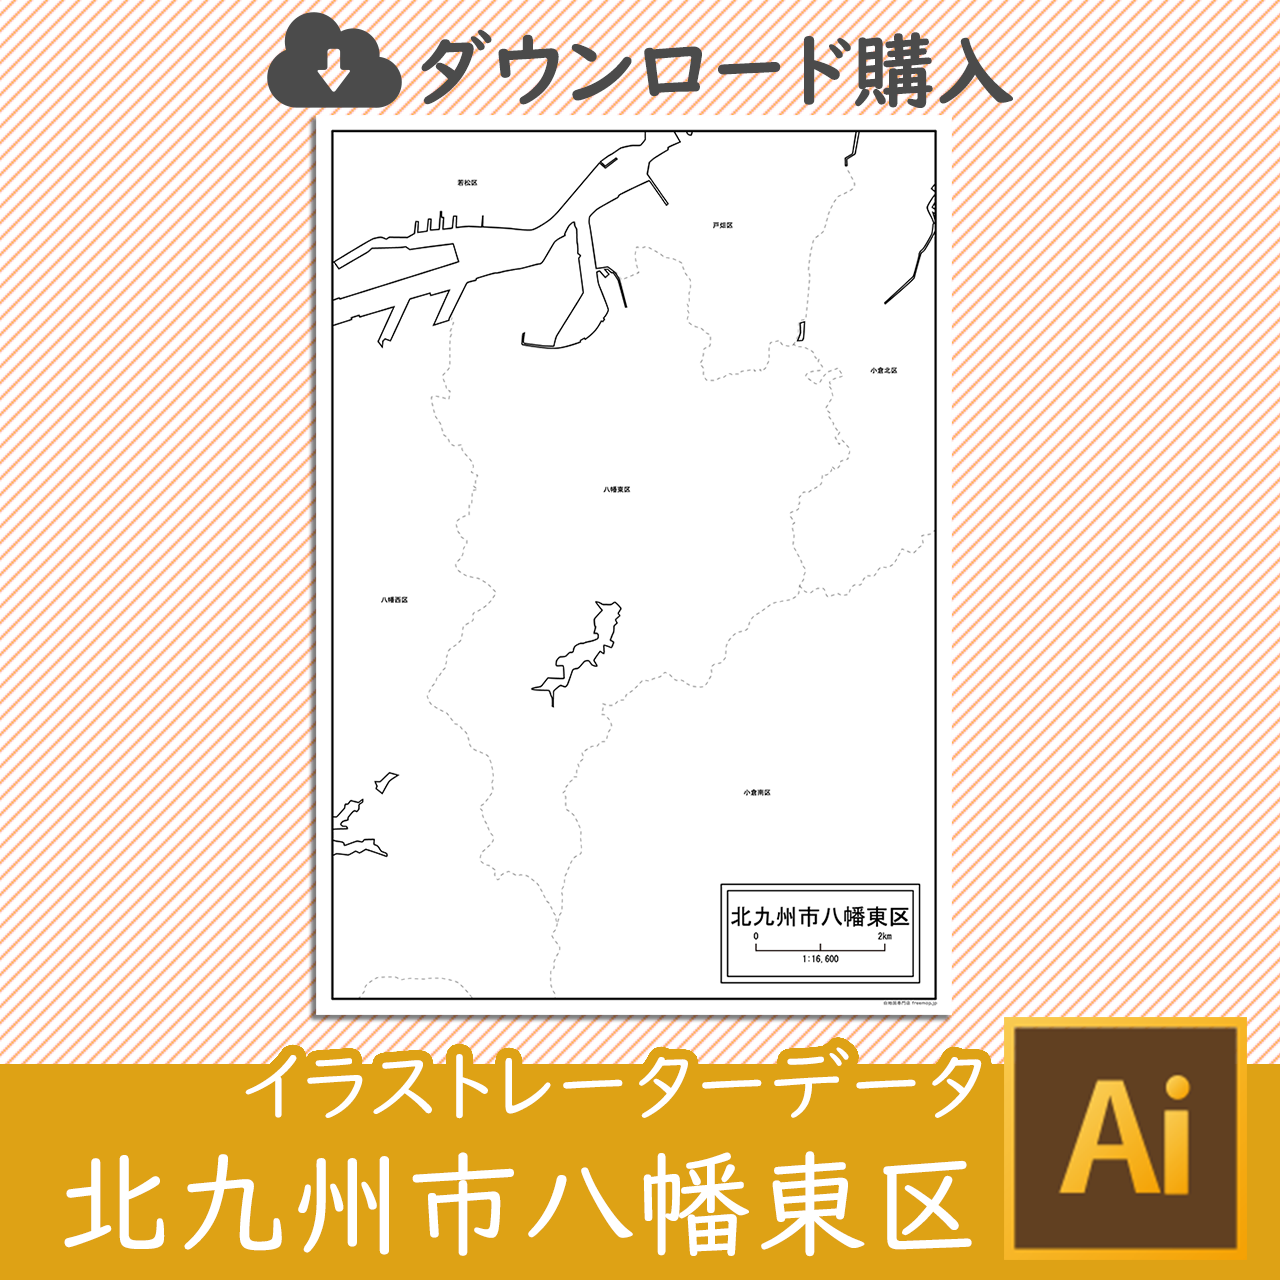 北九州市八幡東区のaiデータのサムネイル画像